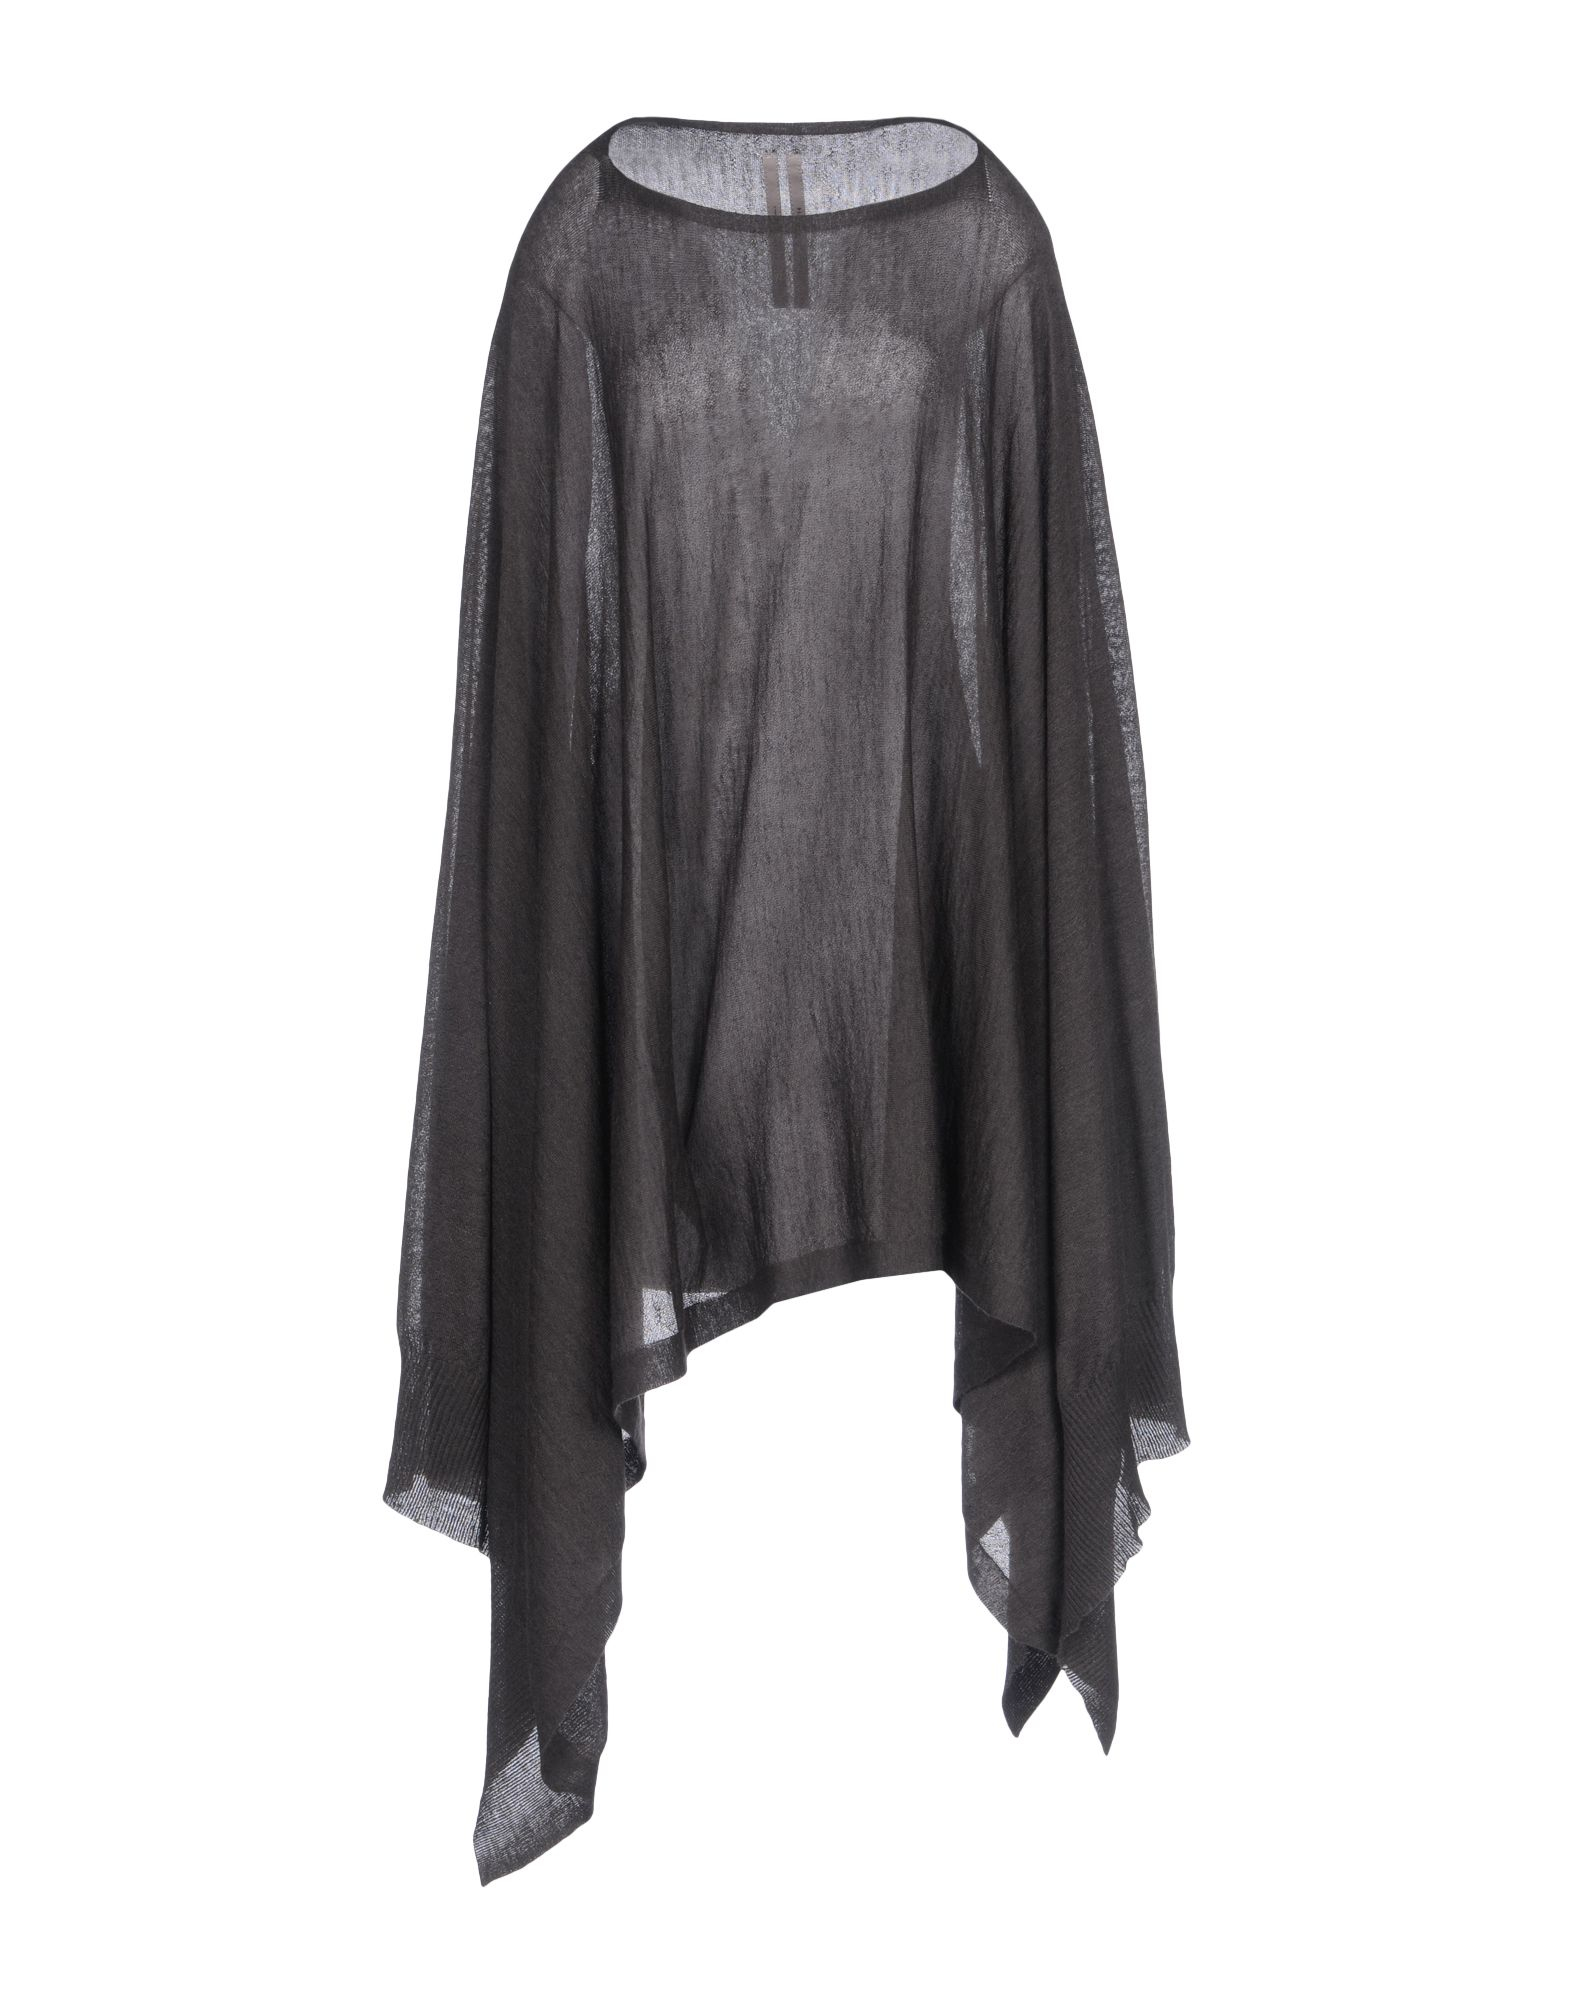 Rick Owens Wool Cloak in Steel Grey (Gray) - Lyst